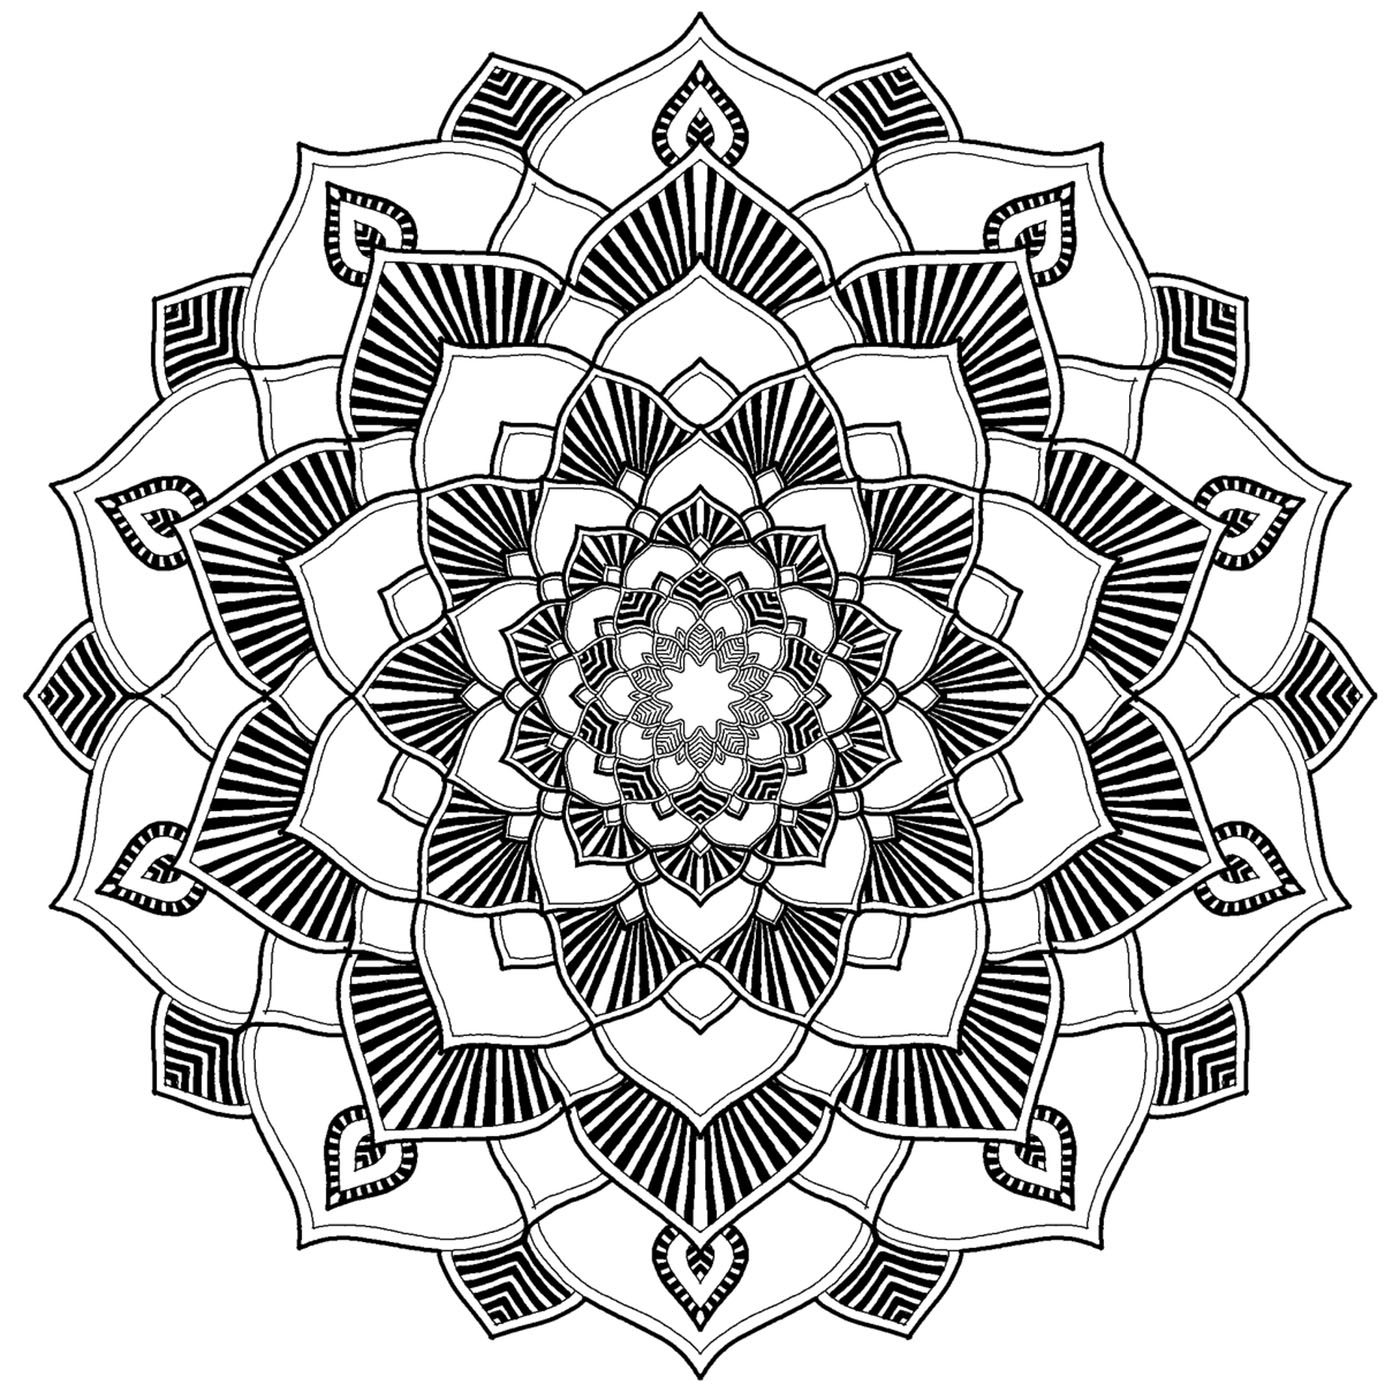 Un Mandala superbo, perfetto per rilassarsi e godersi la ripetizione colorata di motivi splendidamente disegnati.